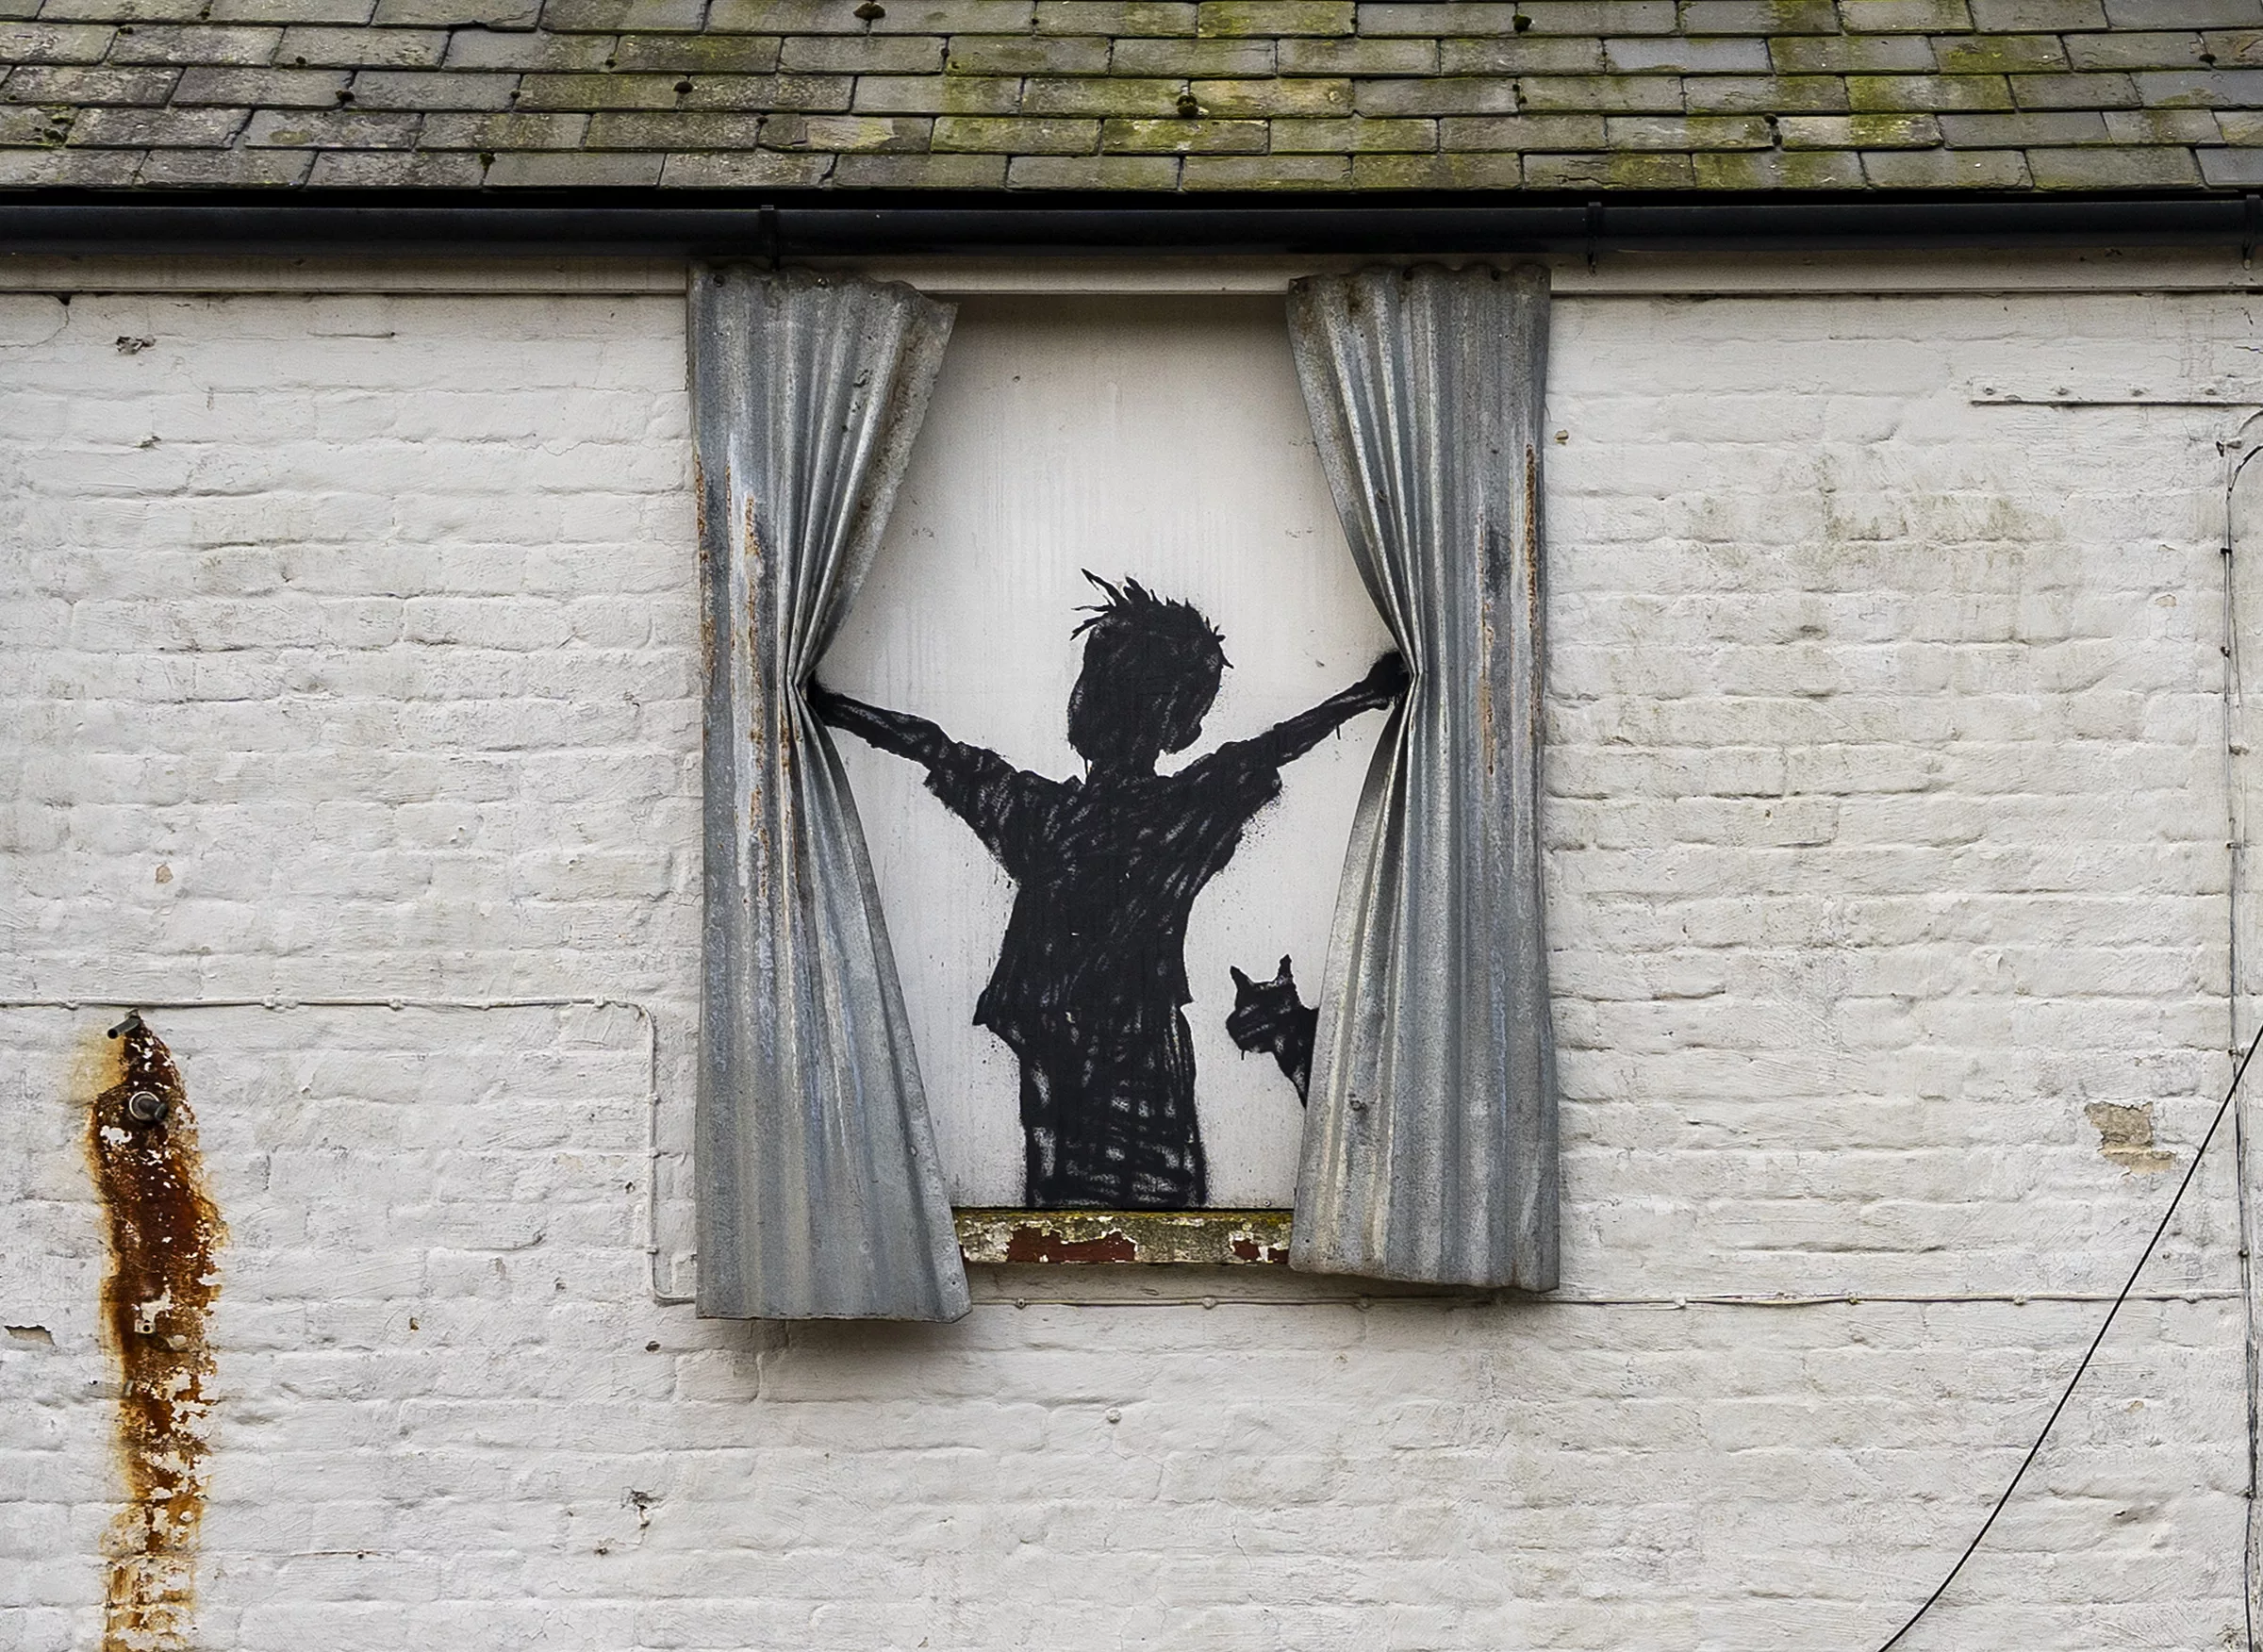 Pictură murală a lui Banksy, distrusă în Anglia